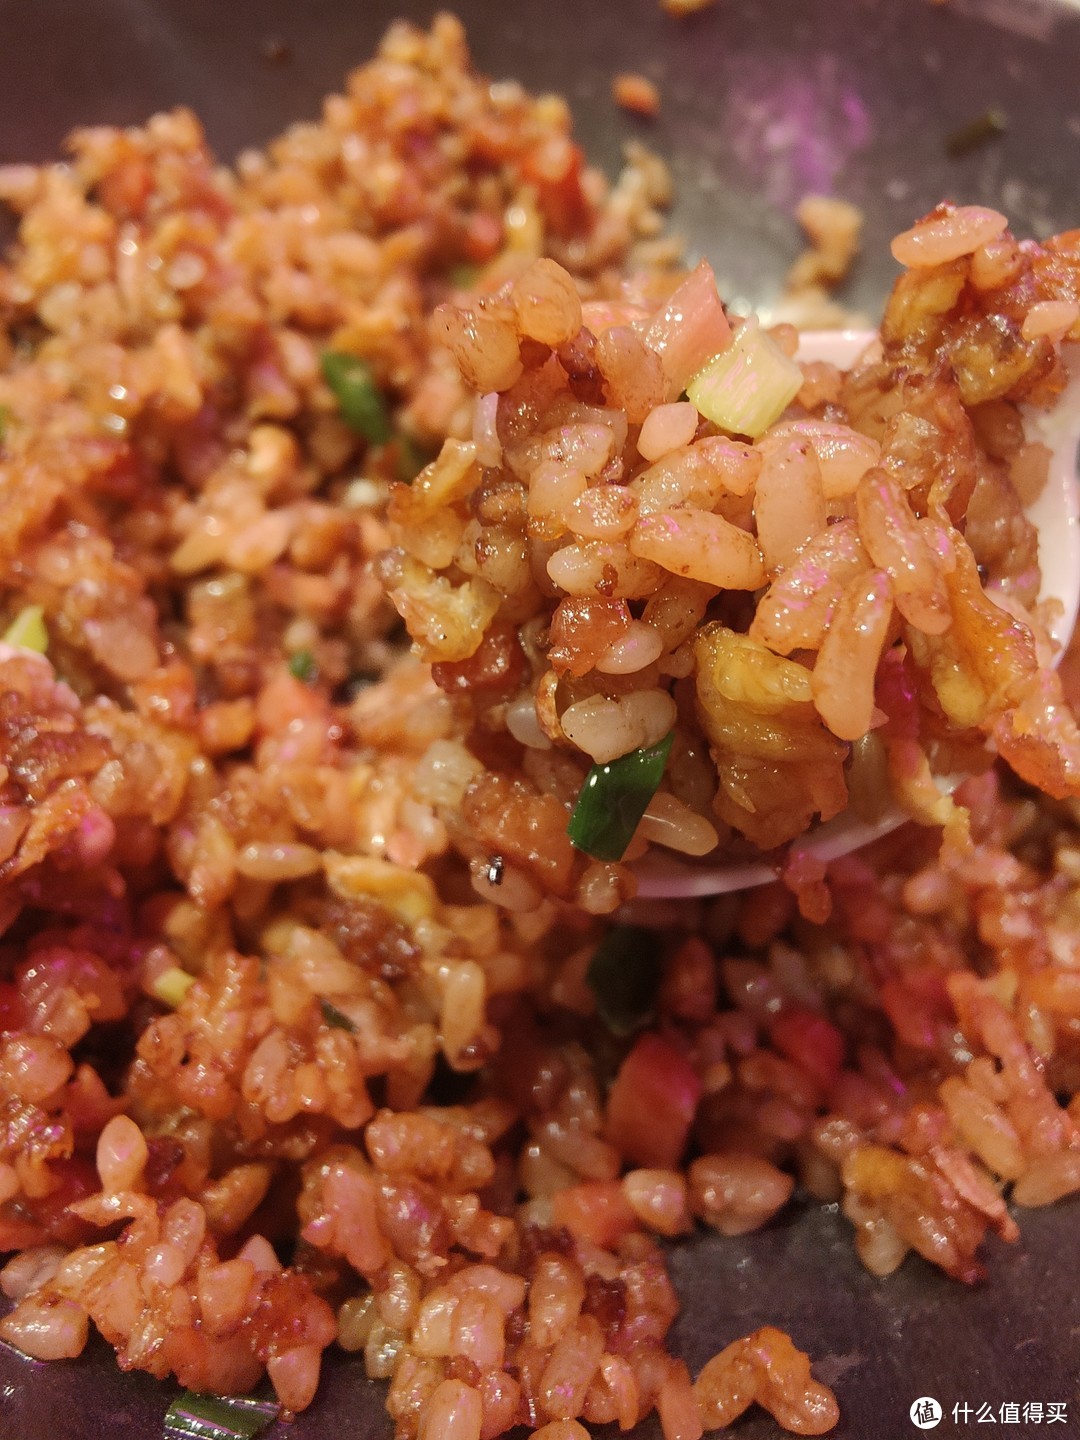 用剩米饭与广式腊肠一炒，香喷喷的一顿饭！